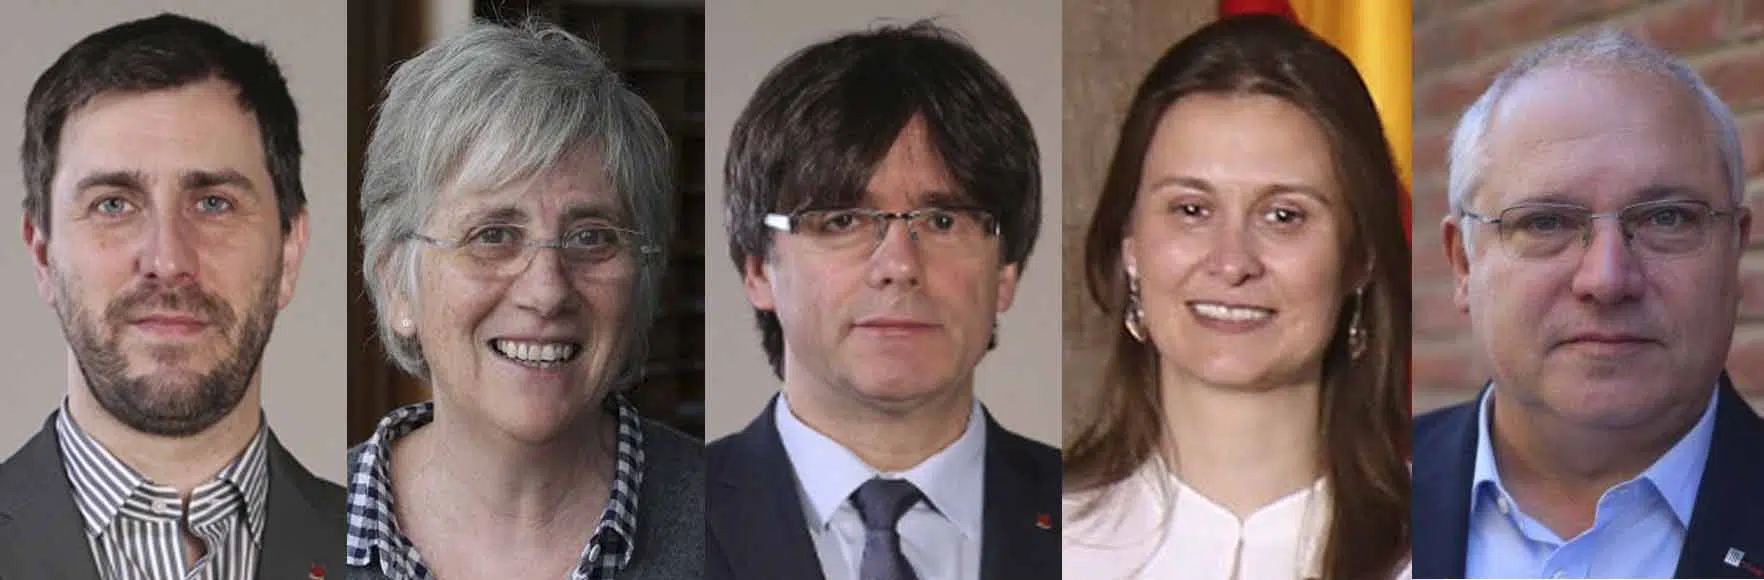 Puigdemont y los cuatro exconsejeros de la Generalitat se entregan a la Policía belga